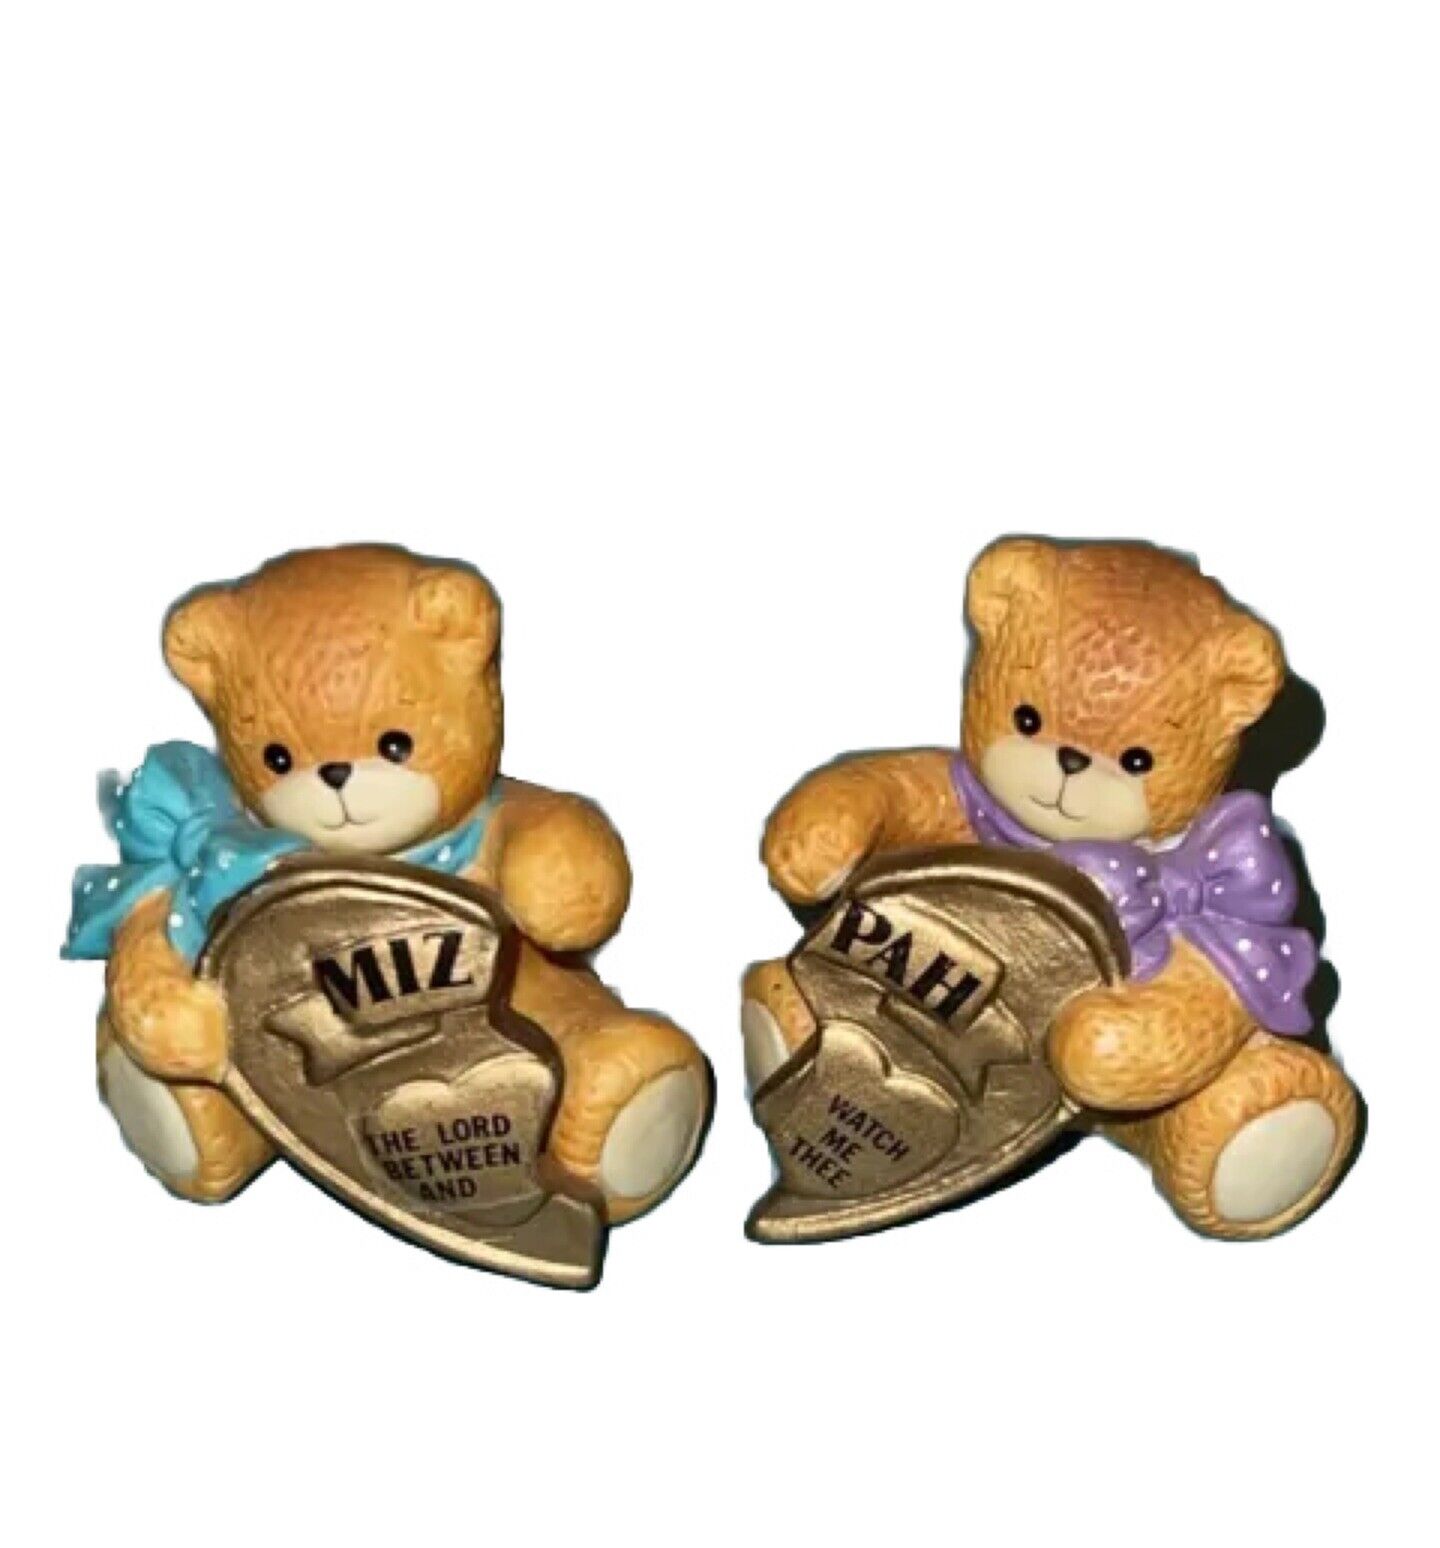 Vintage Lucy & Me Teddy Bear Enesco Ceramic ￼Figurine Or 2 Broken Hearts